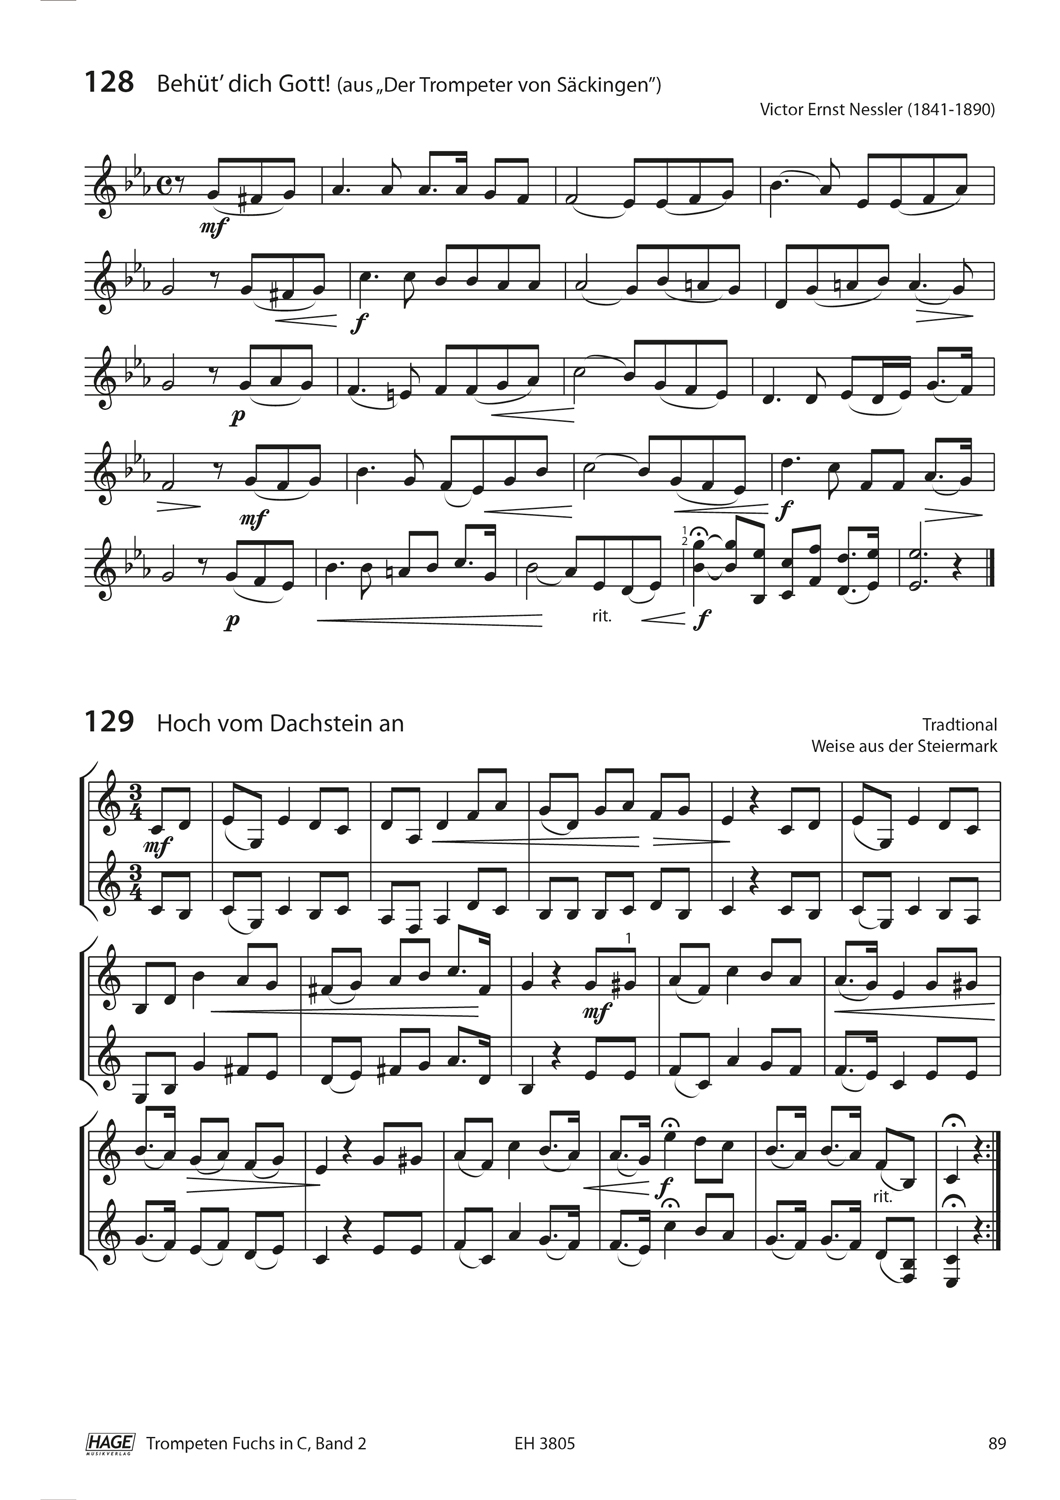 Trompeten Fuchs Band 2 in C für Posaunenchor (mit CD) Seiten 8